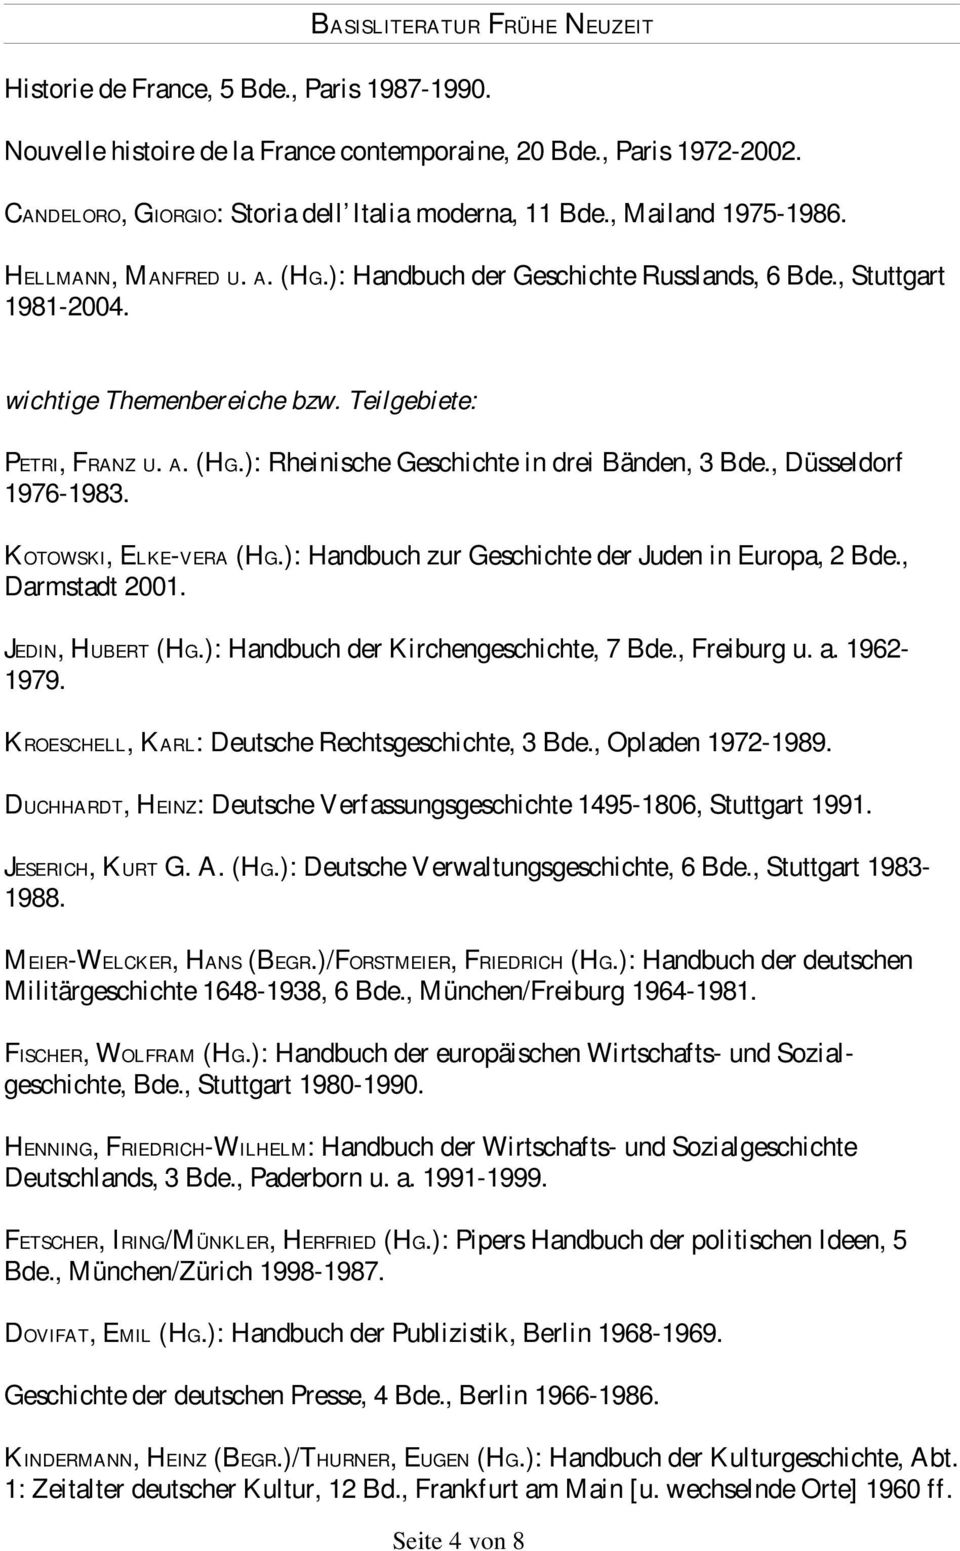 , Düsseldorf 1976-1983. KOTOWSKI, ELKE-VERA (HG.): Handbuch zur Geschichte der Juden in Europa, 2 Bde., Darmstadt 2001. JEDIN, HUBERT (HG.): Handbuch der Kirchengeschichte, 7 Bde., Freiburg u. a.